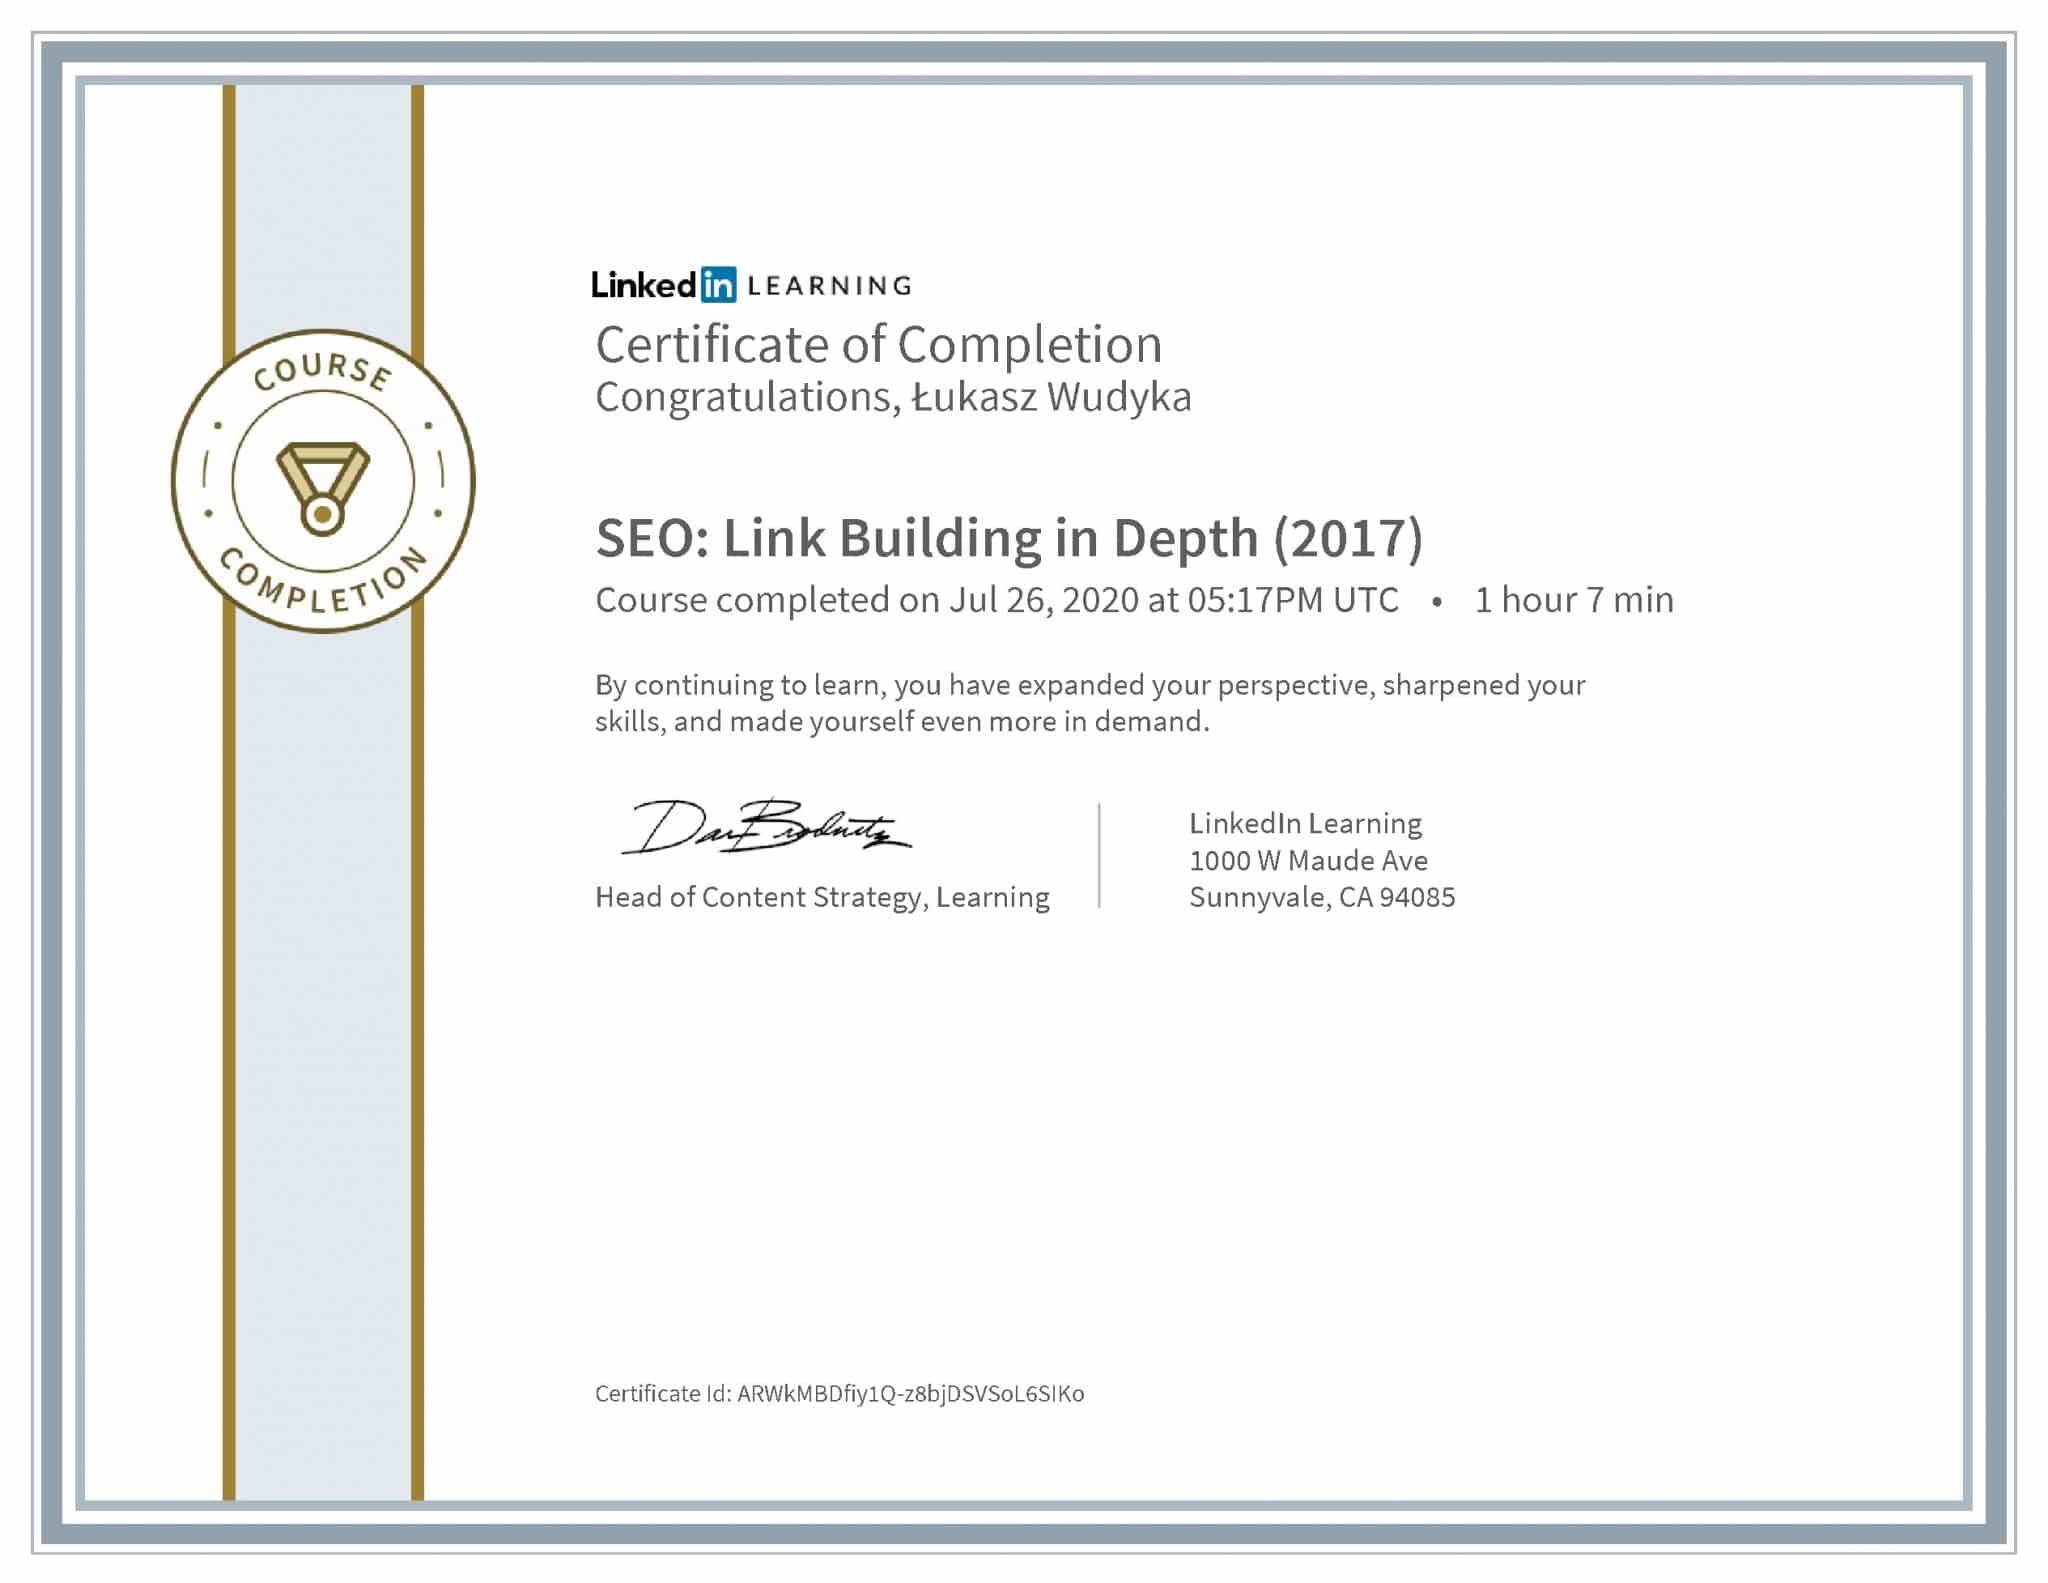 Łukasz Wudyka certyfikat LinkedIn SEO: Link Building in Depth (2017)